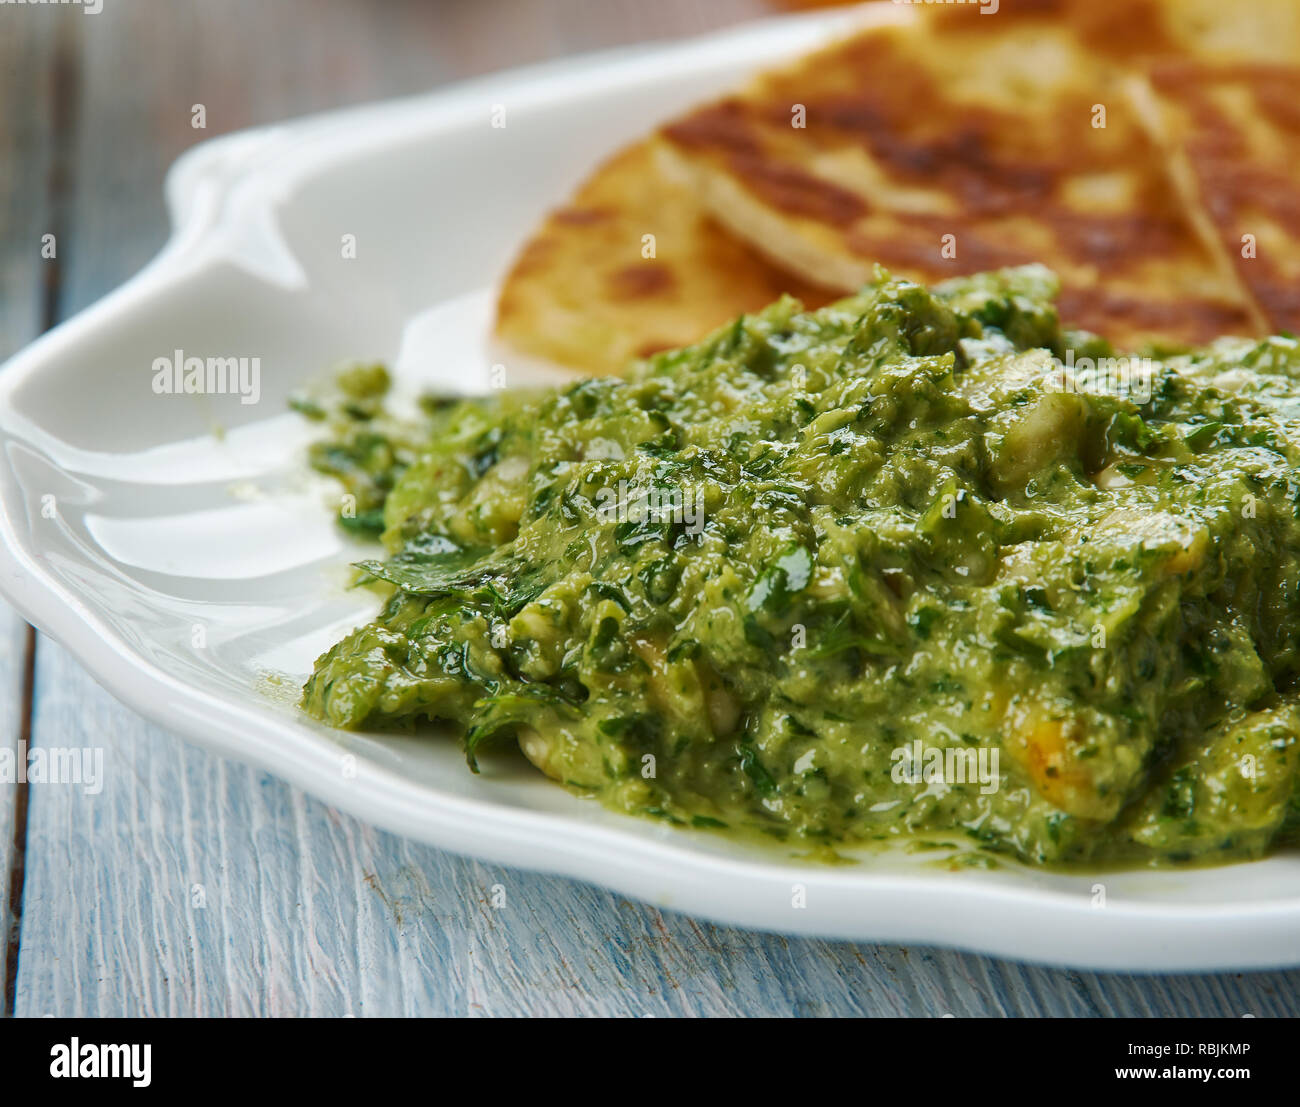 Shatta moyen-orientale, sauce chaude, une cuisine du Moyen-Orient, des plats traditionnels Levant assorties, vue du dessus Banque D'Images